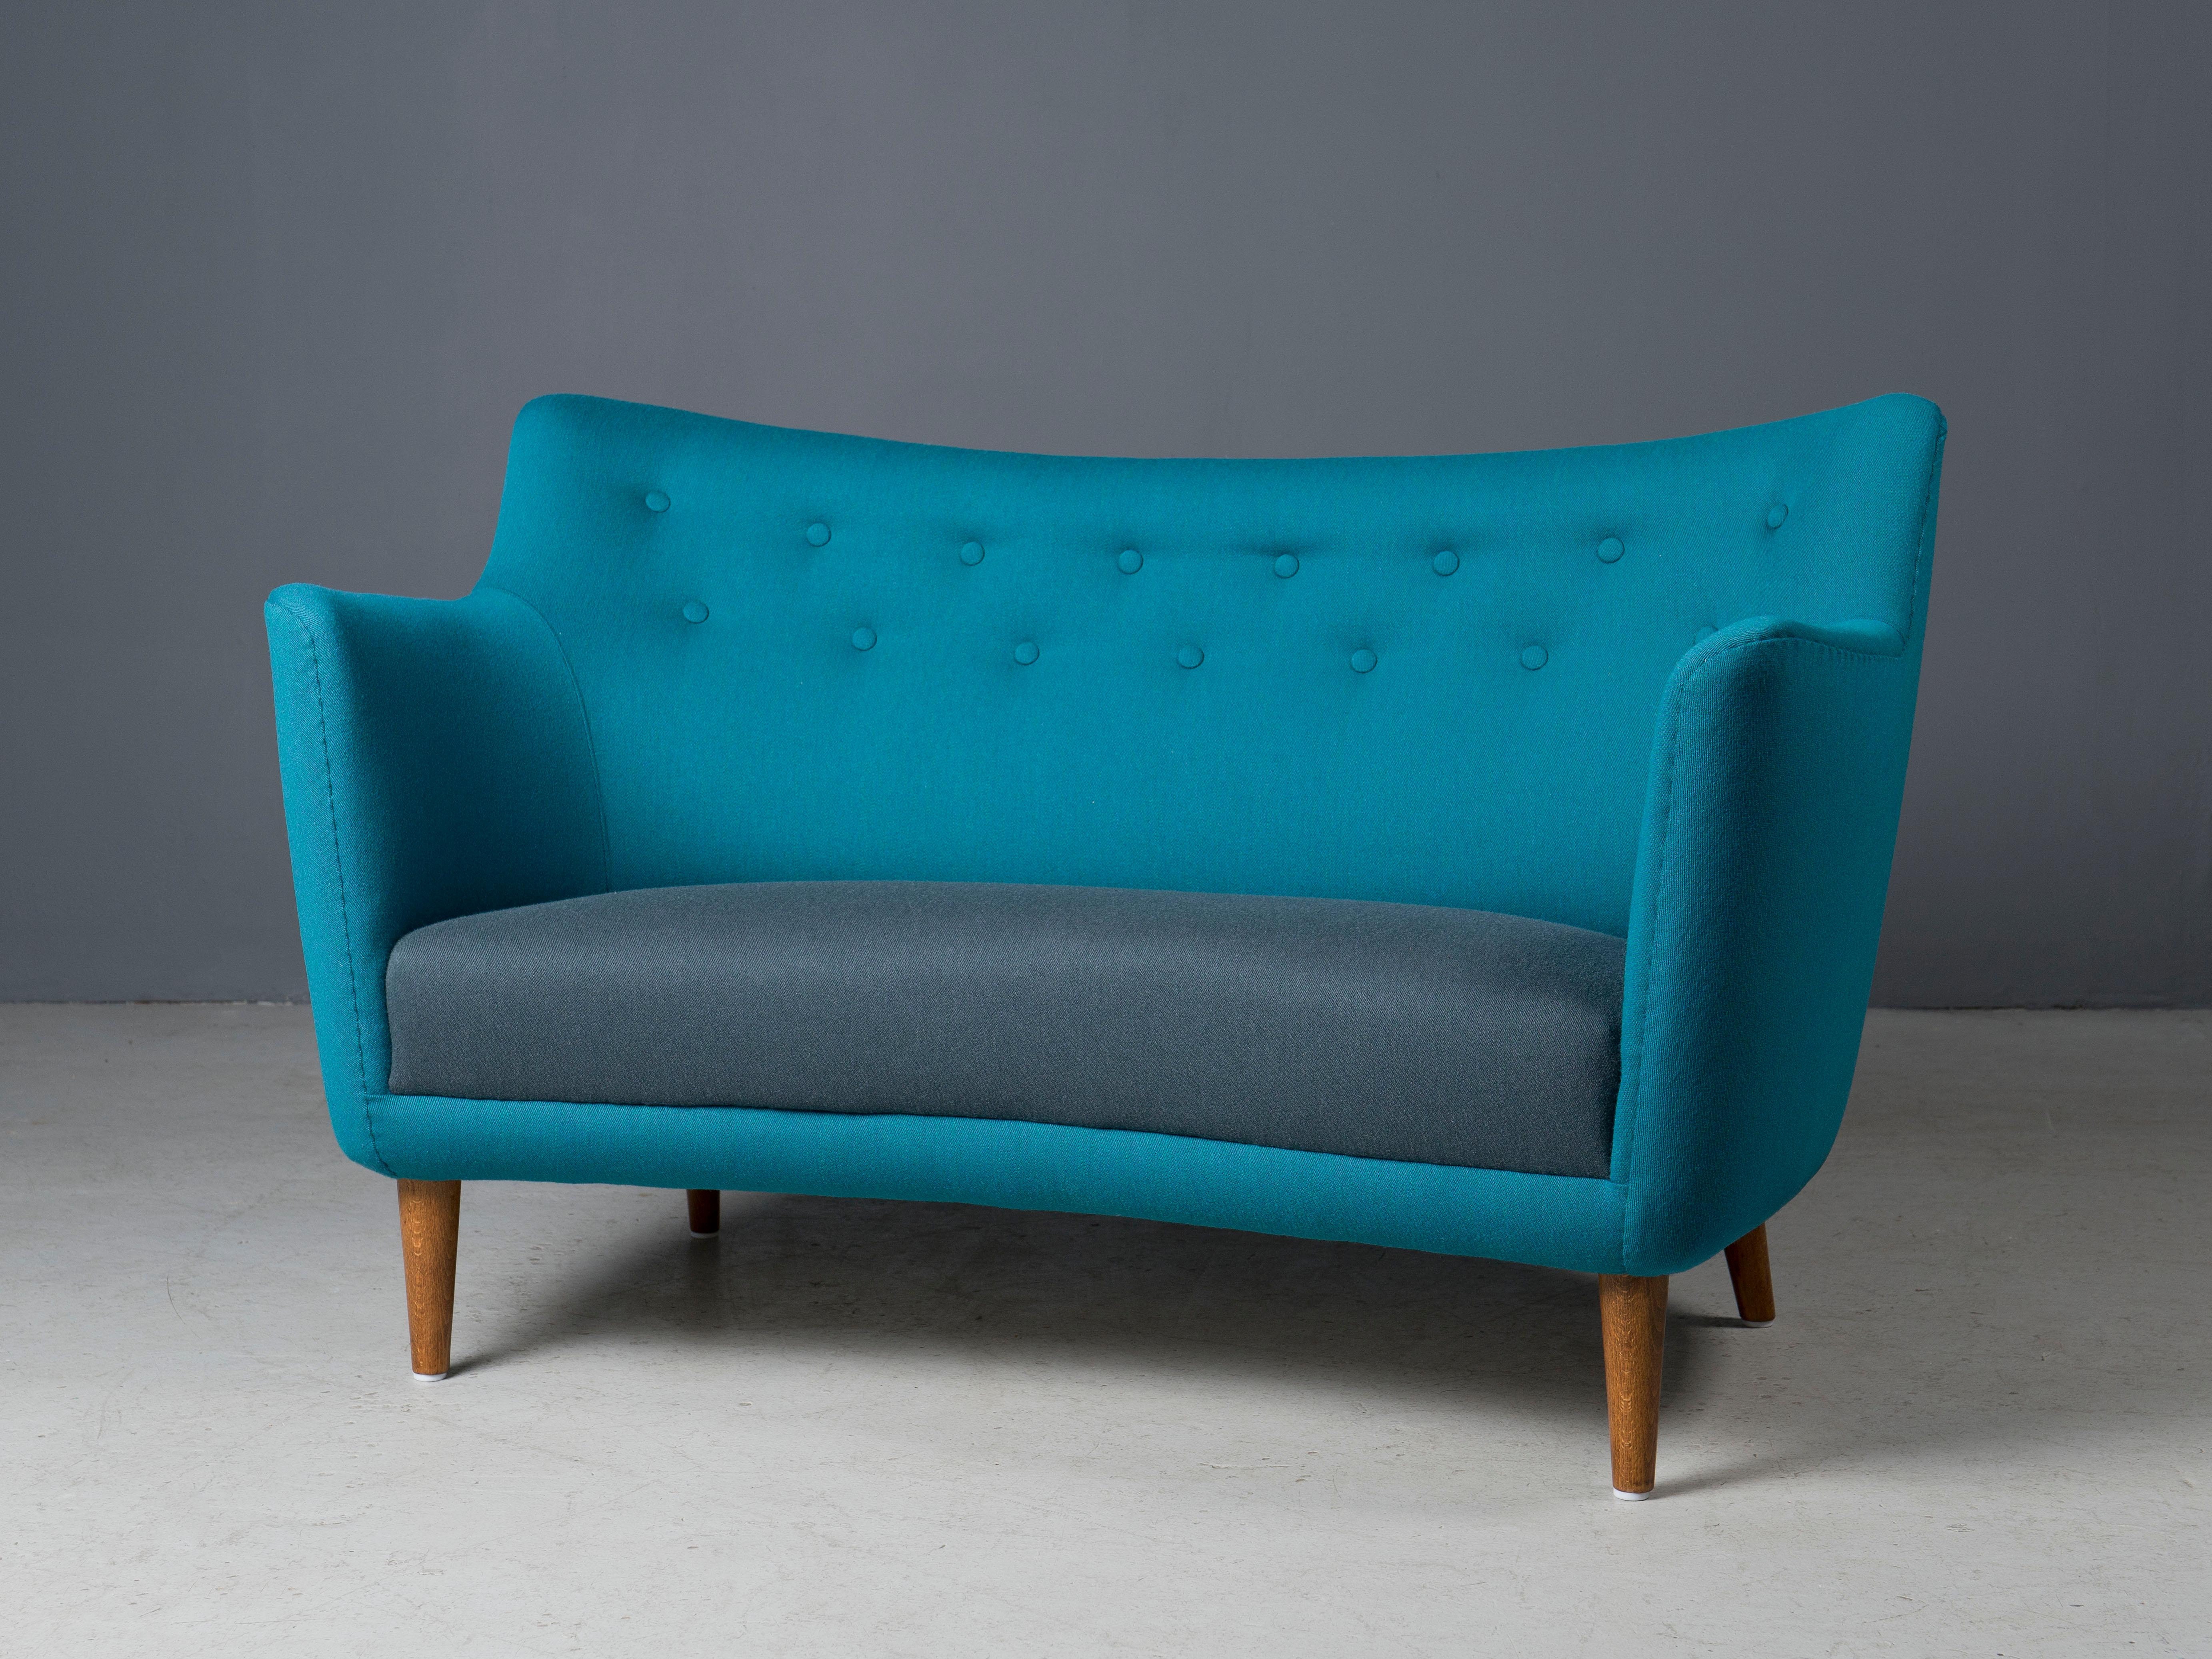 Rare sofa, similar to the Poet Sofa, designed for a 